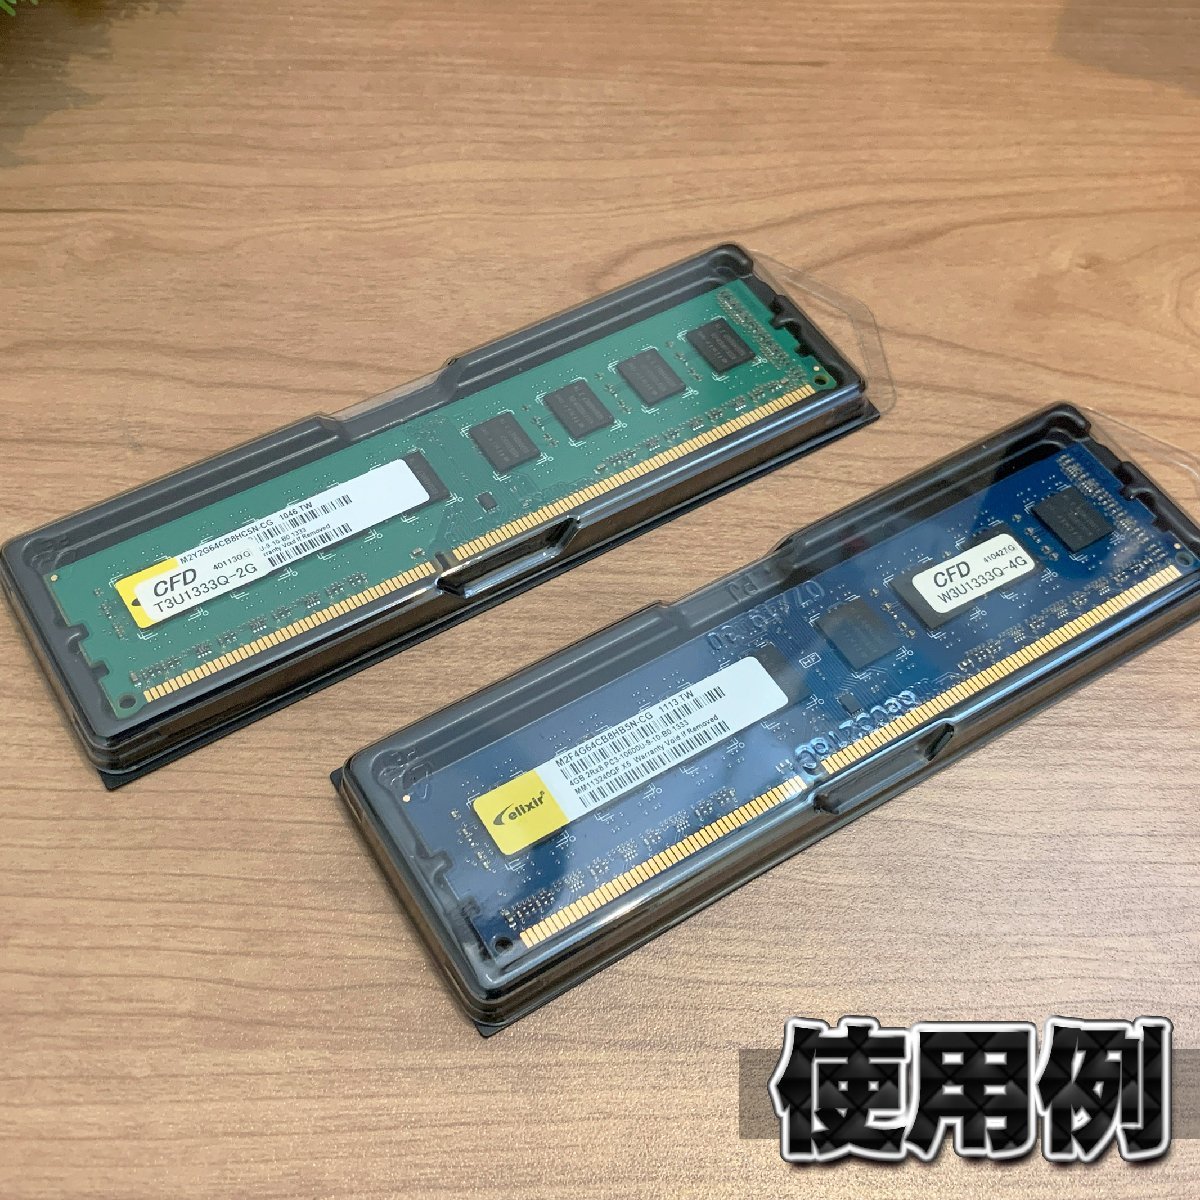 【 DDR3 対応 】蓋付き PC メモリー シェルケース DIMM 用 プラスチック 保管 収納ケース 20枚セット_画像6